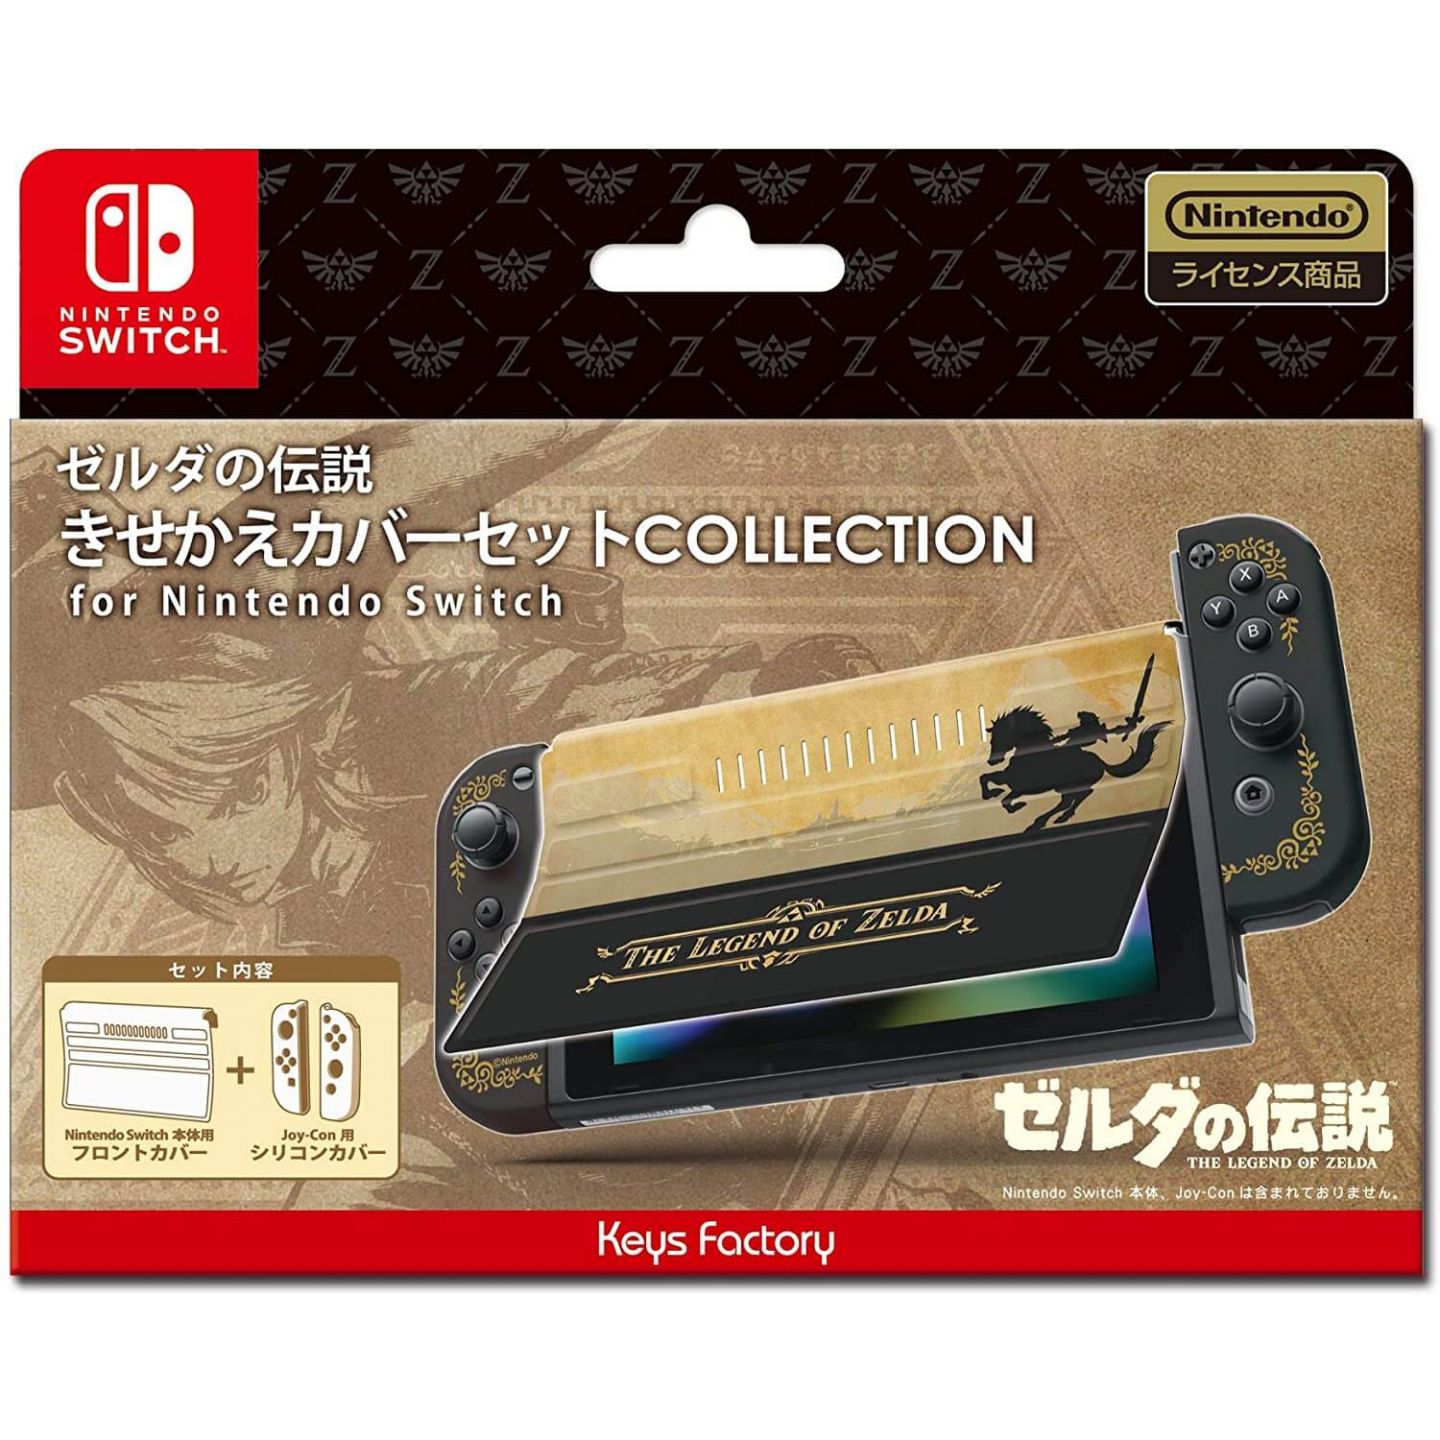 Keys Factory CKS-009-1 - Kisekae Set - Cover for Nintendo Switch